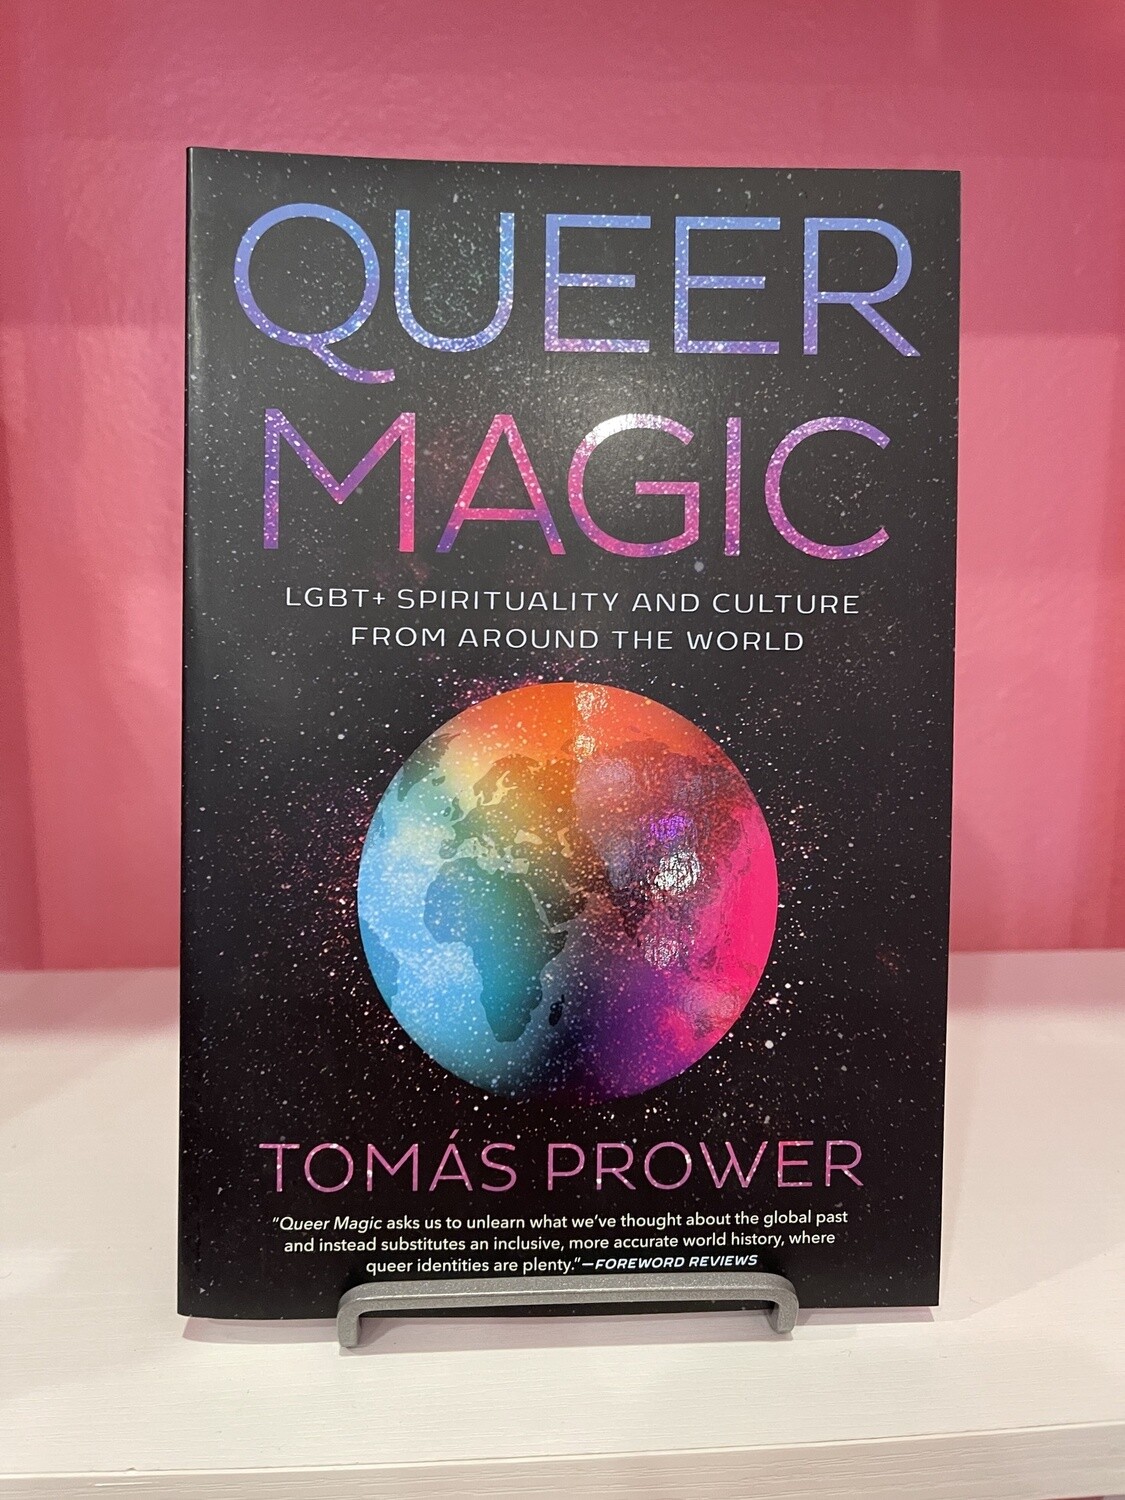 Queer Magic